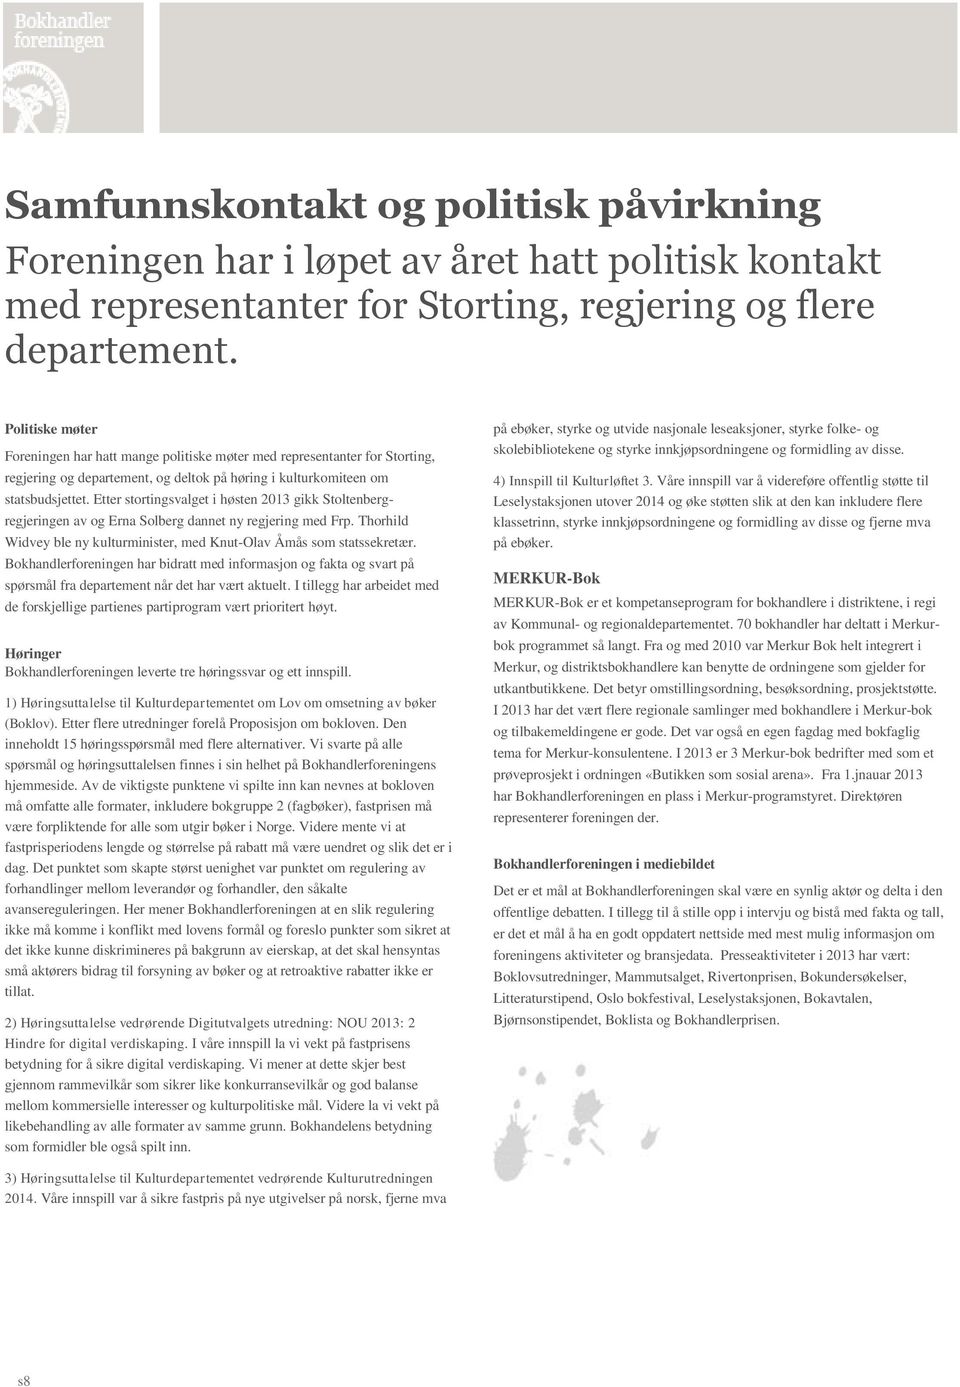 Etter stortingsvalget i høsten 2013 gikk Stoltenbergregjeringen av og Erna Solberg dannet ny regjering med Frp. Thorhild Widvey ble ny kulturminister, med Knut-Olav Åmås som statssekretær.